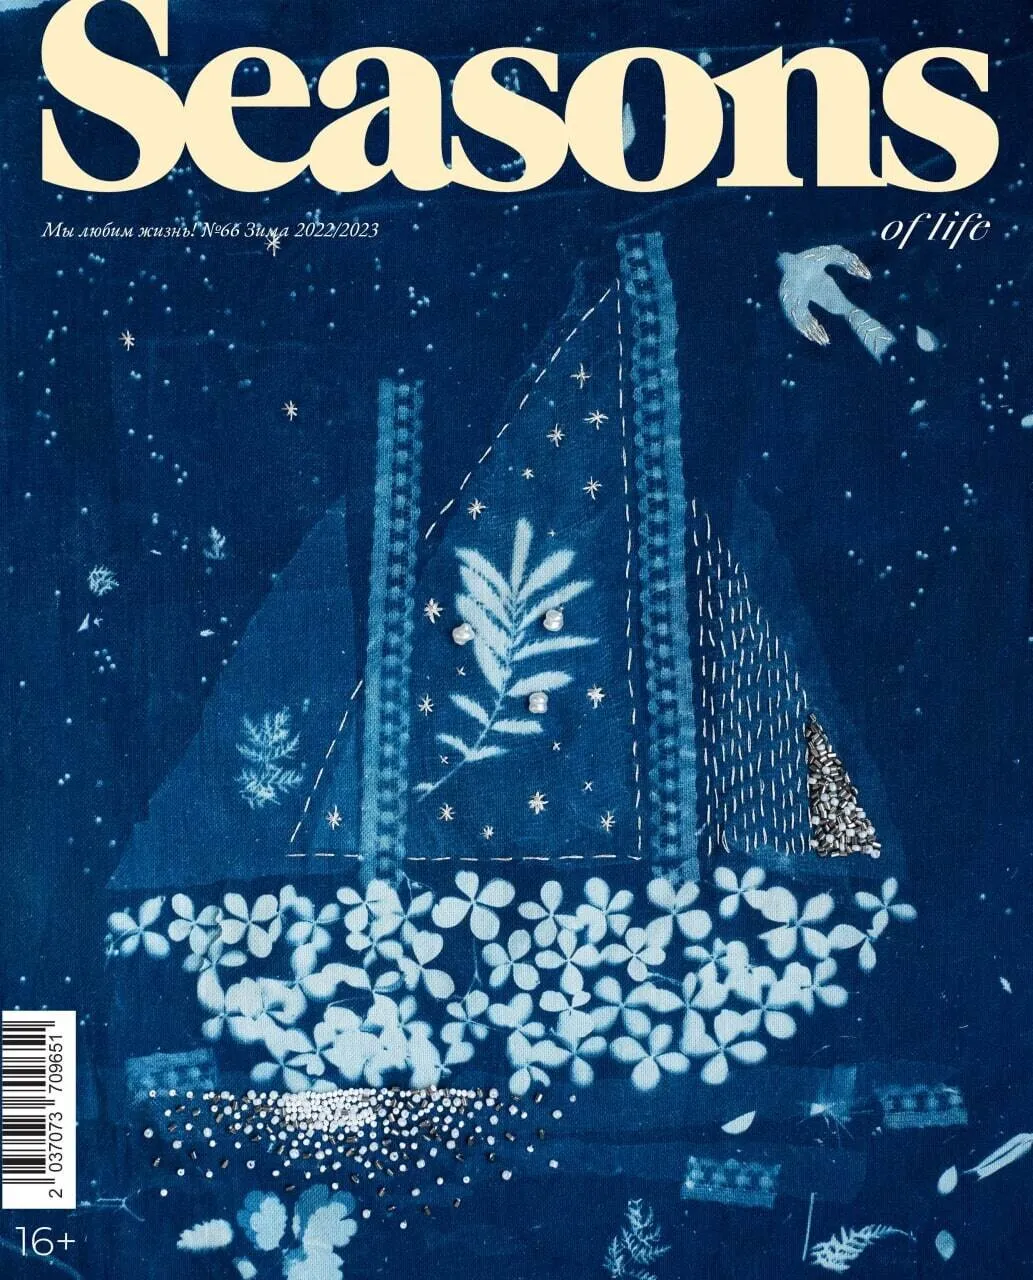 Журнал Seasons of life № 66 (зима 2022/2023)